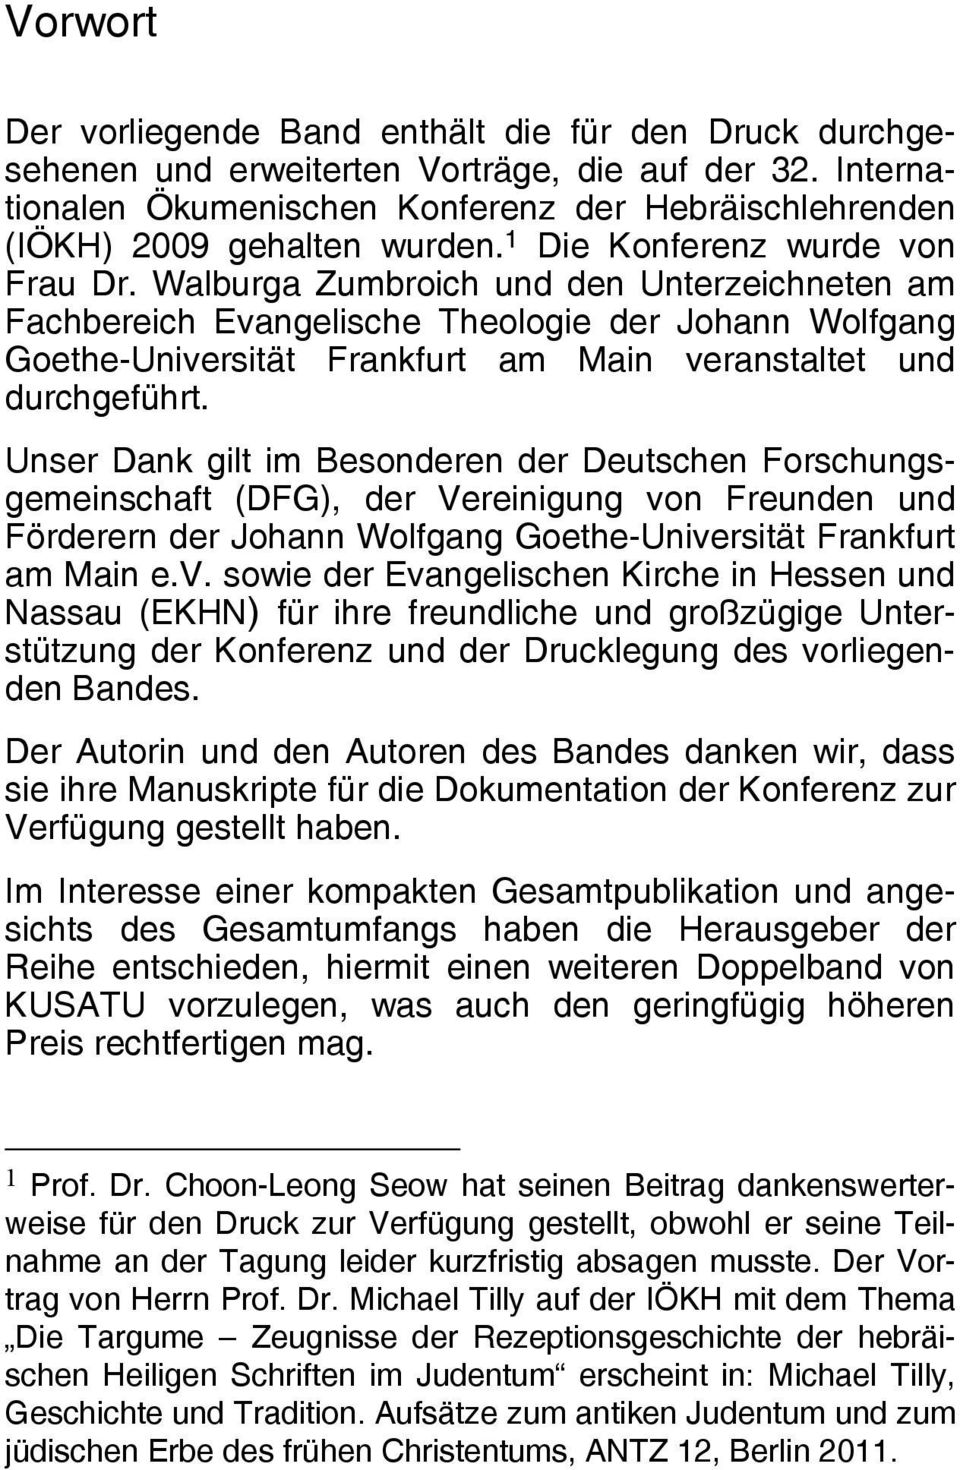 Walburga Zumbroich und den Unterzeichneten am Fachbereich Evangelische Theologie der Johann Wolfgang Goethe-Universität Frankfurt am Main veranstaltet und durchgeführt.